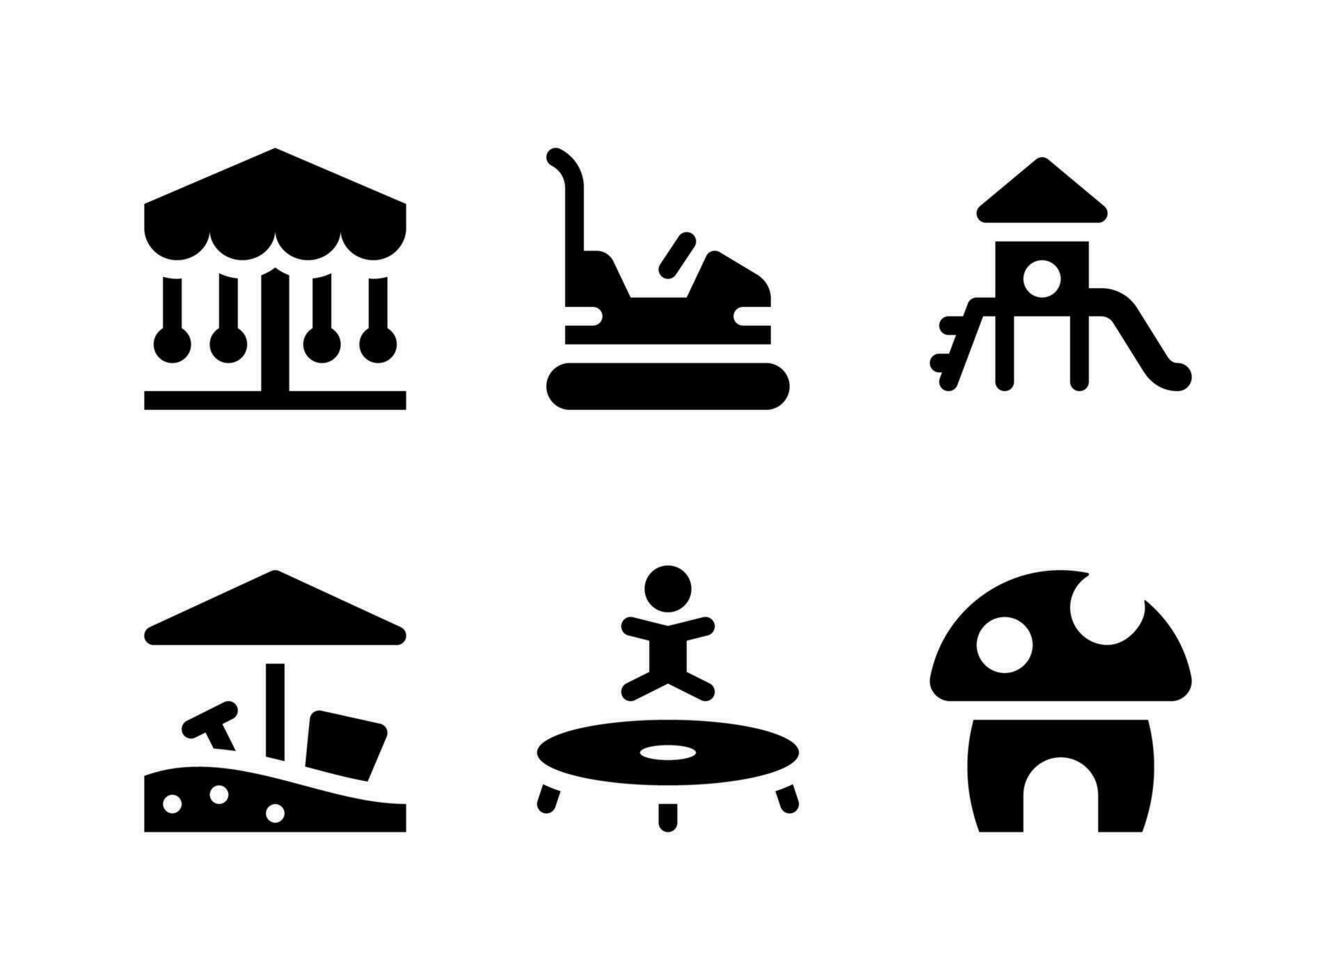 semplice set di icone solide vettoriali relative al parco giochi. contiene icone come scivolo, sandbox, trampolino, funghi e altro ancora.